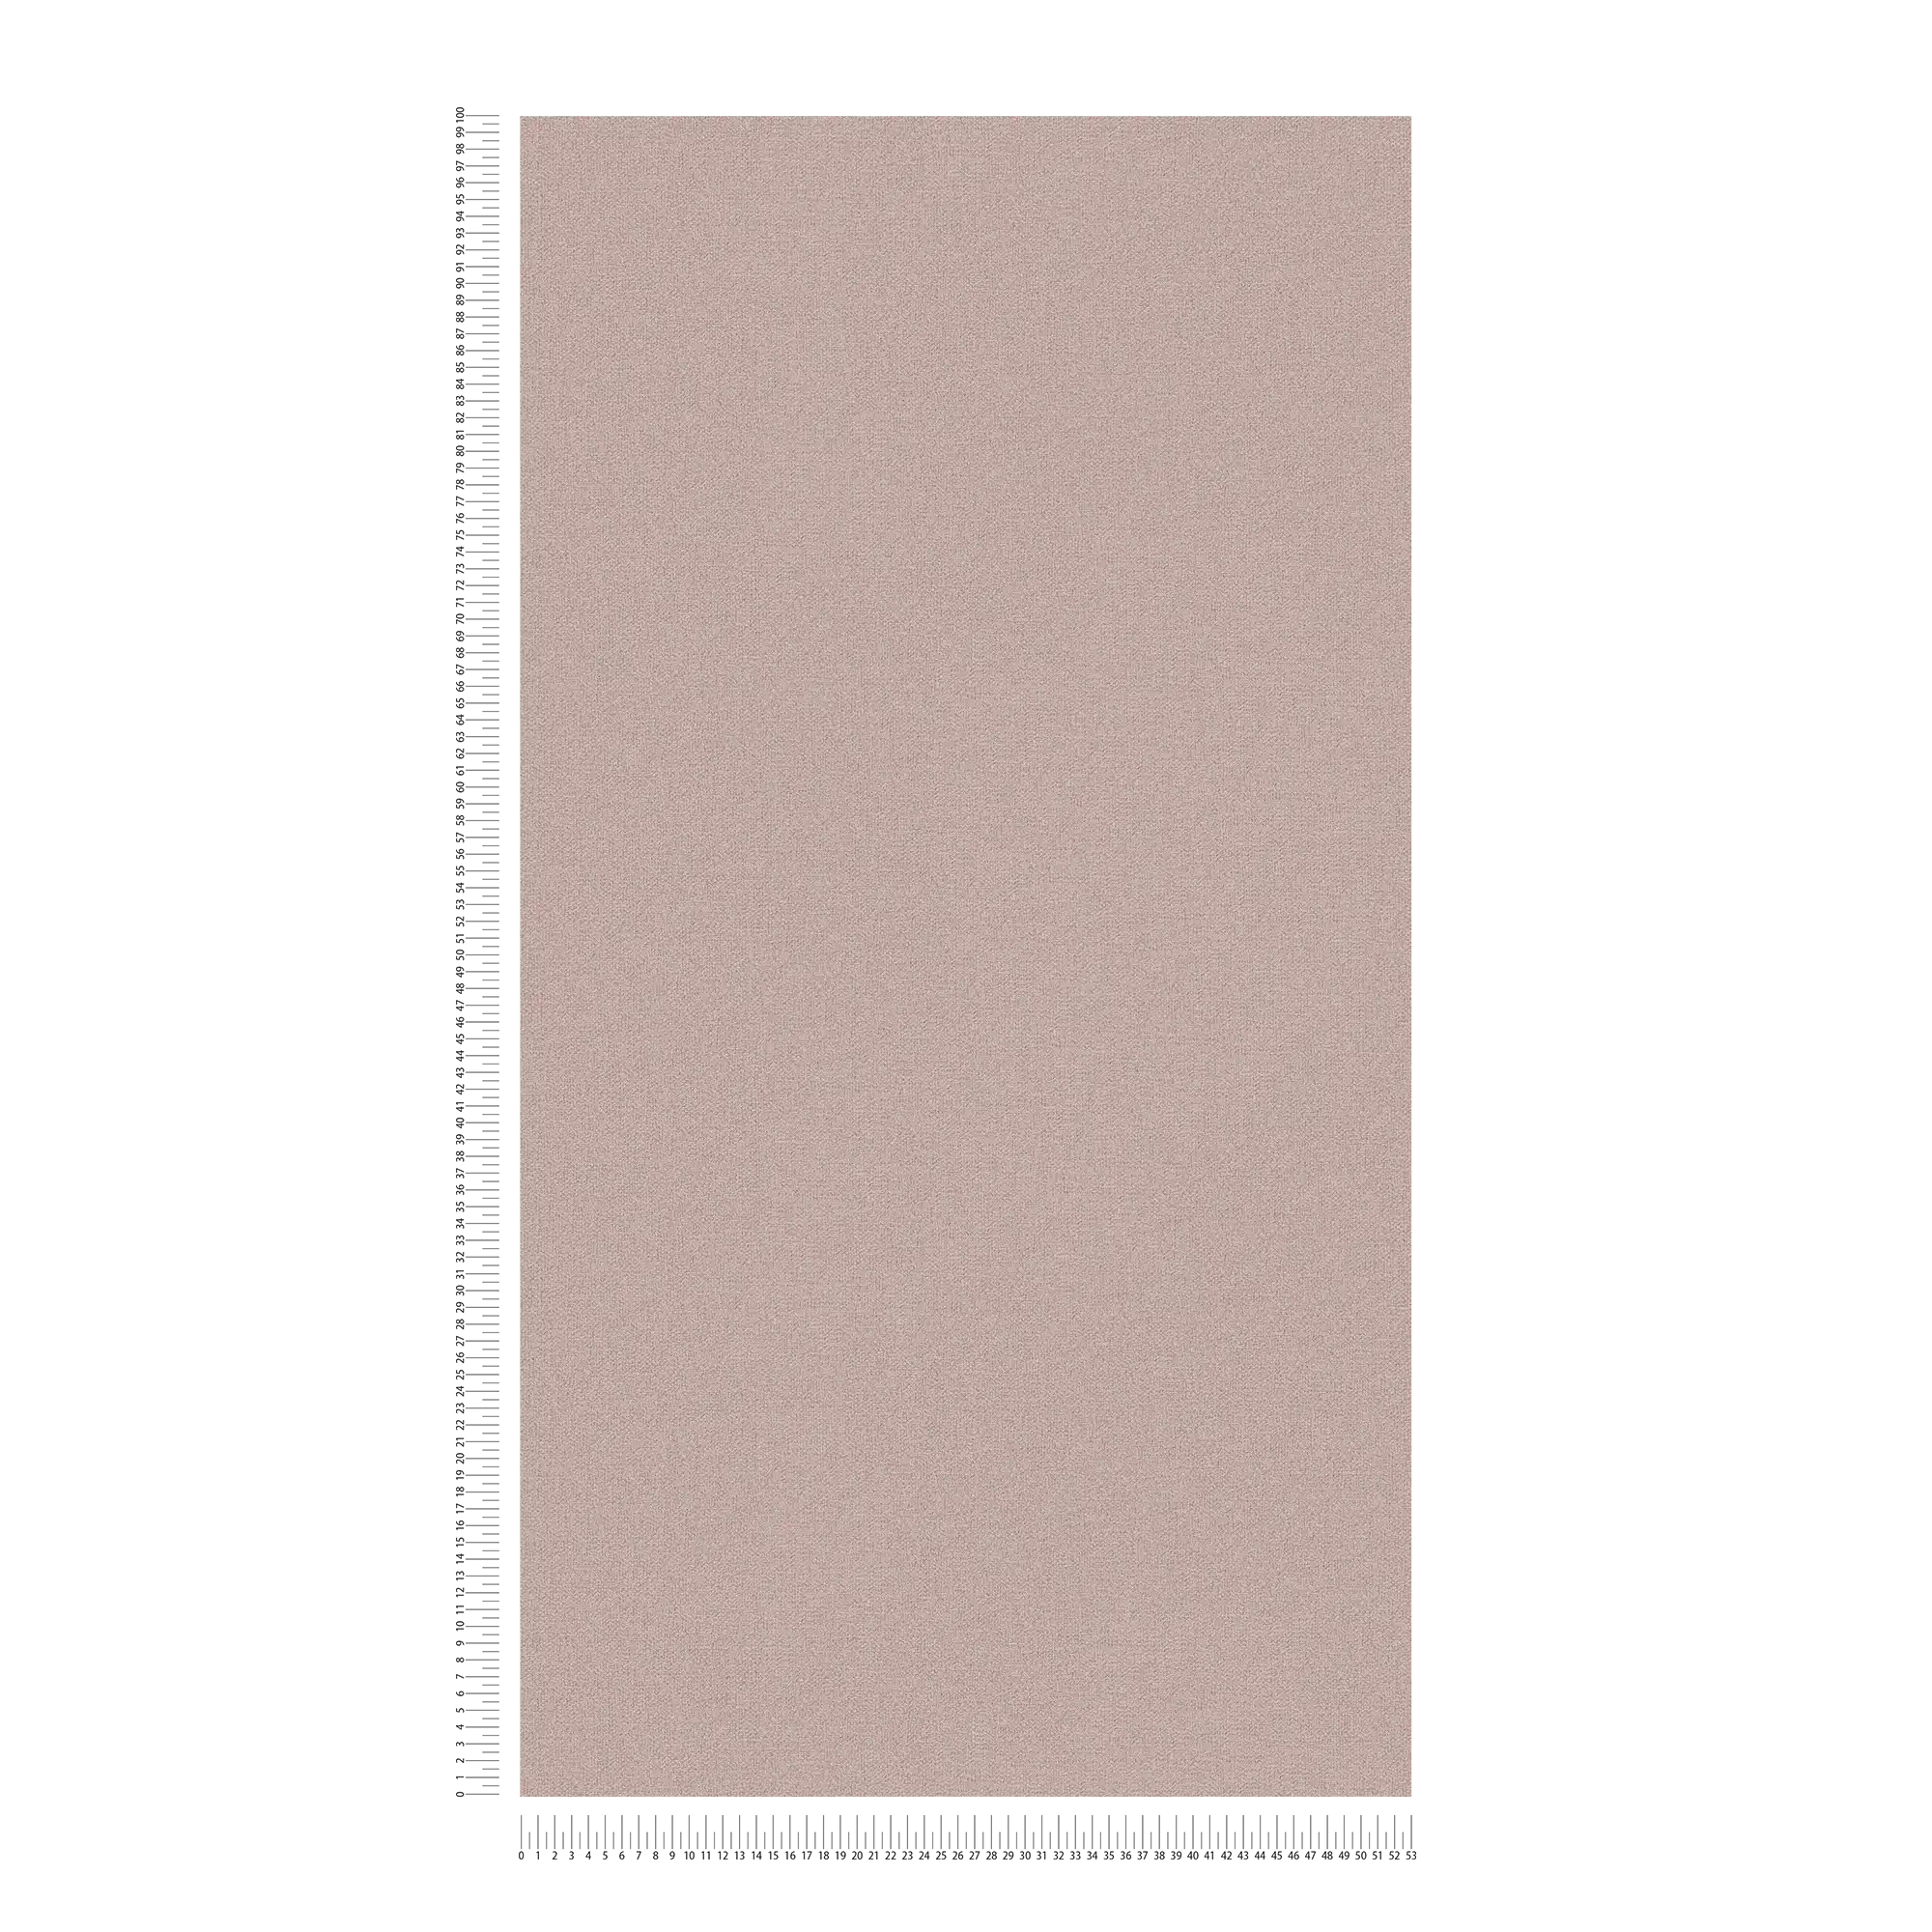             Papel pintado no tejido liso con estructura de lino - gris, marrón, gris
        